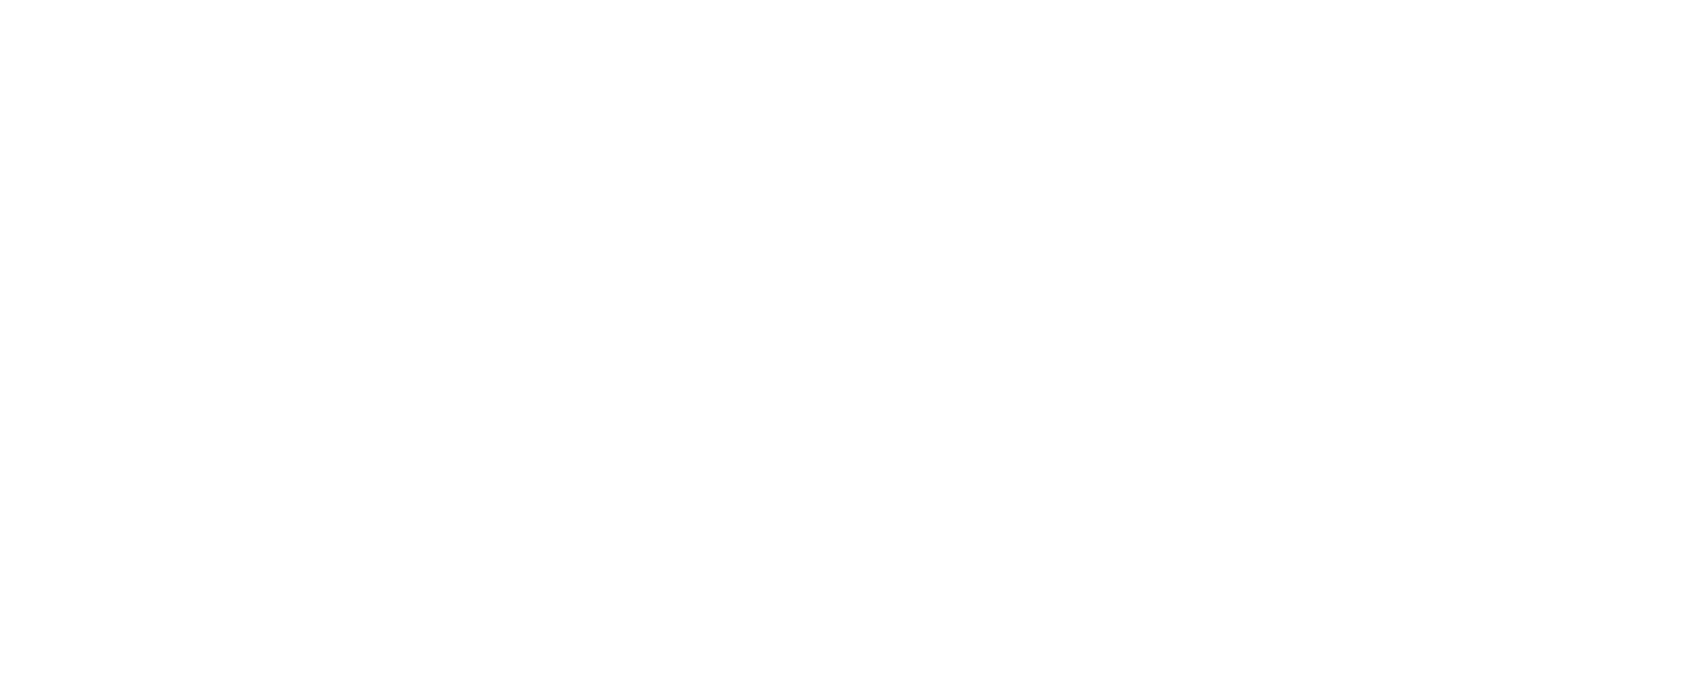 Napa.lv